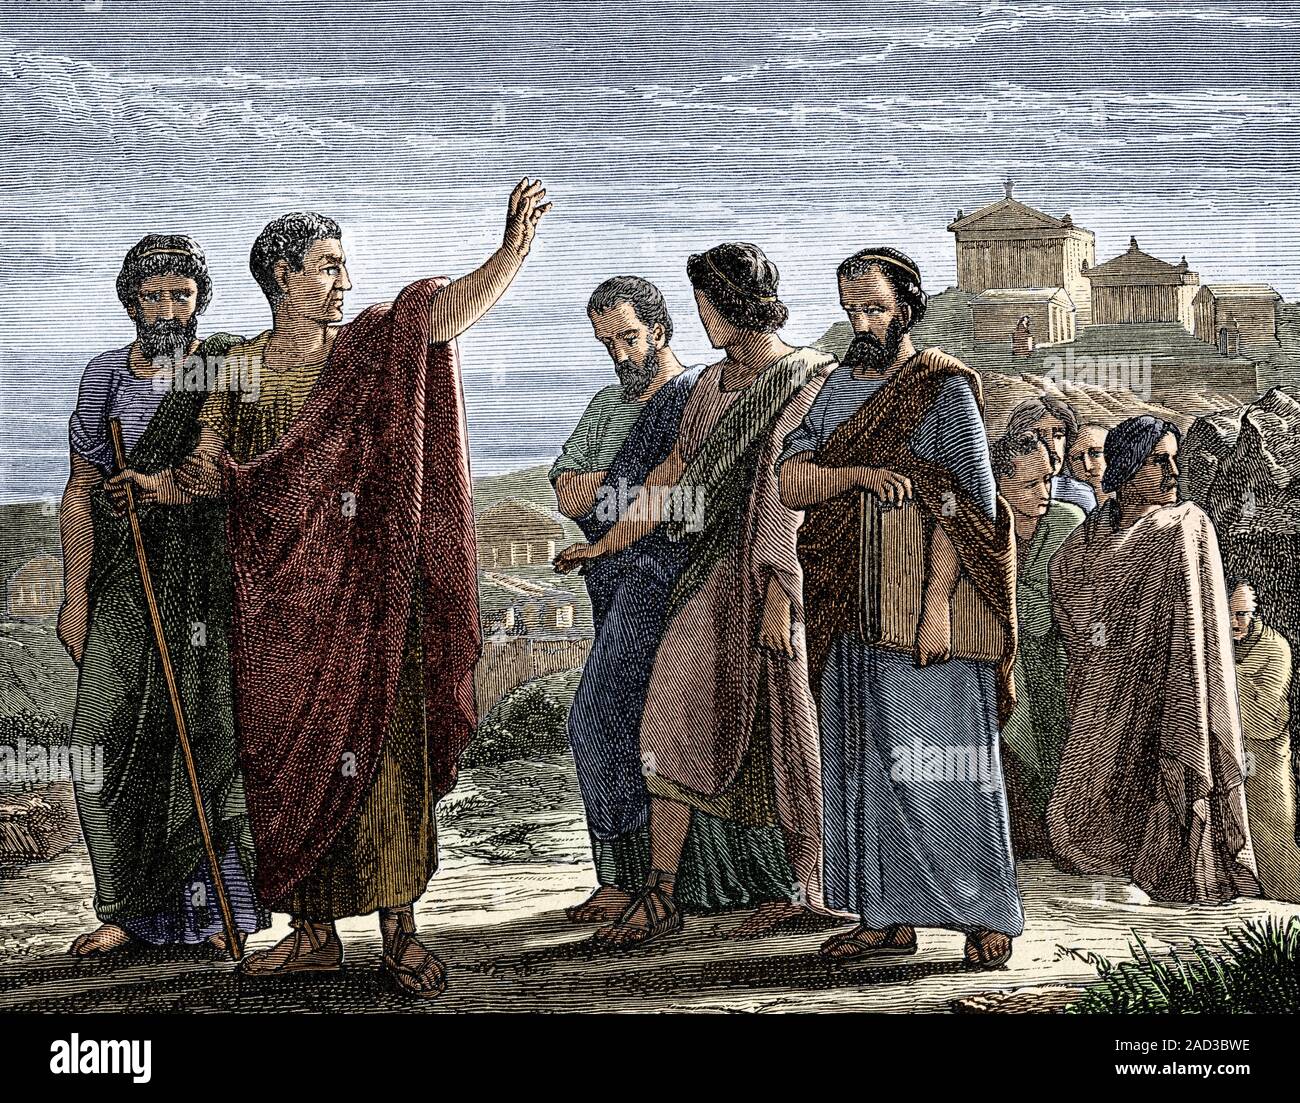 Aristóteles (384 AEC - 322 AEC), el filósofo y científico griego